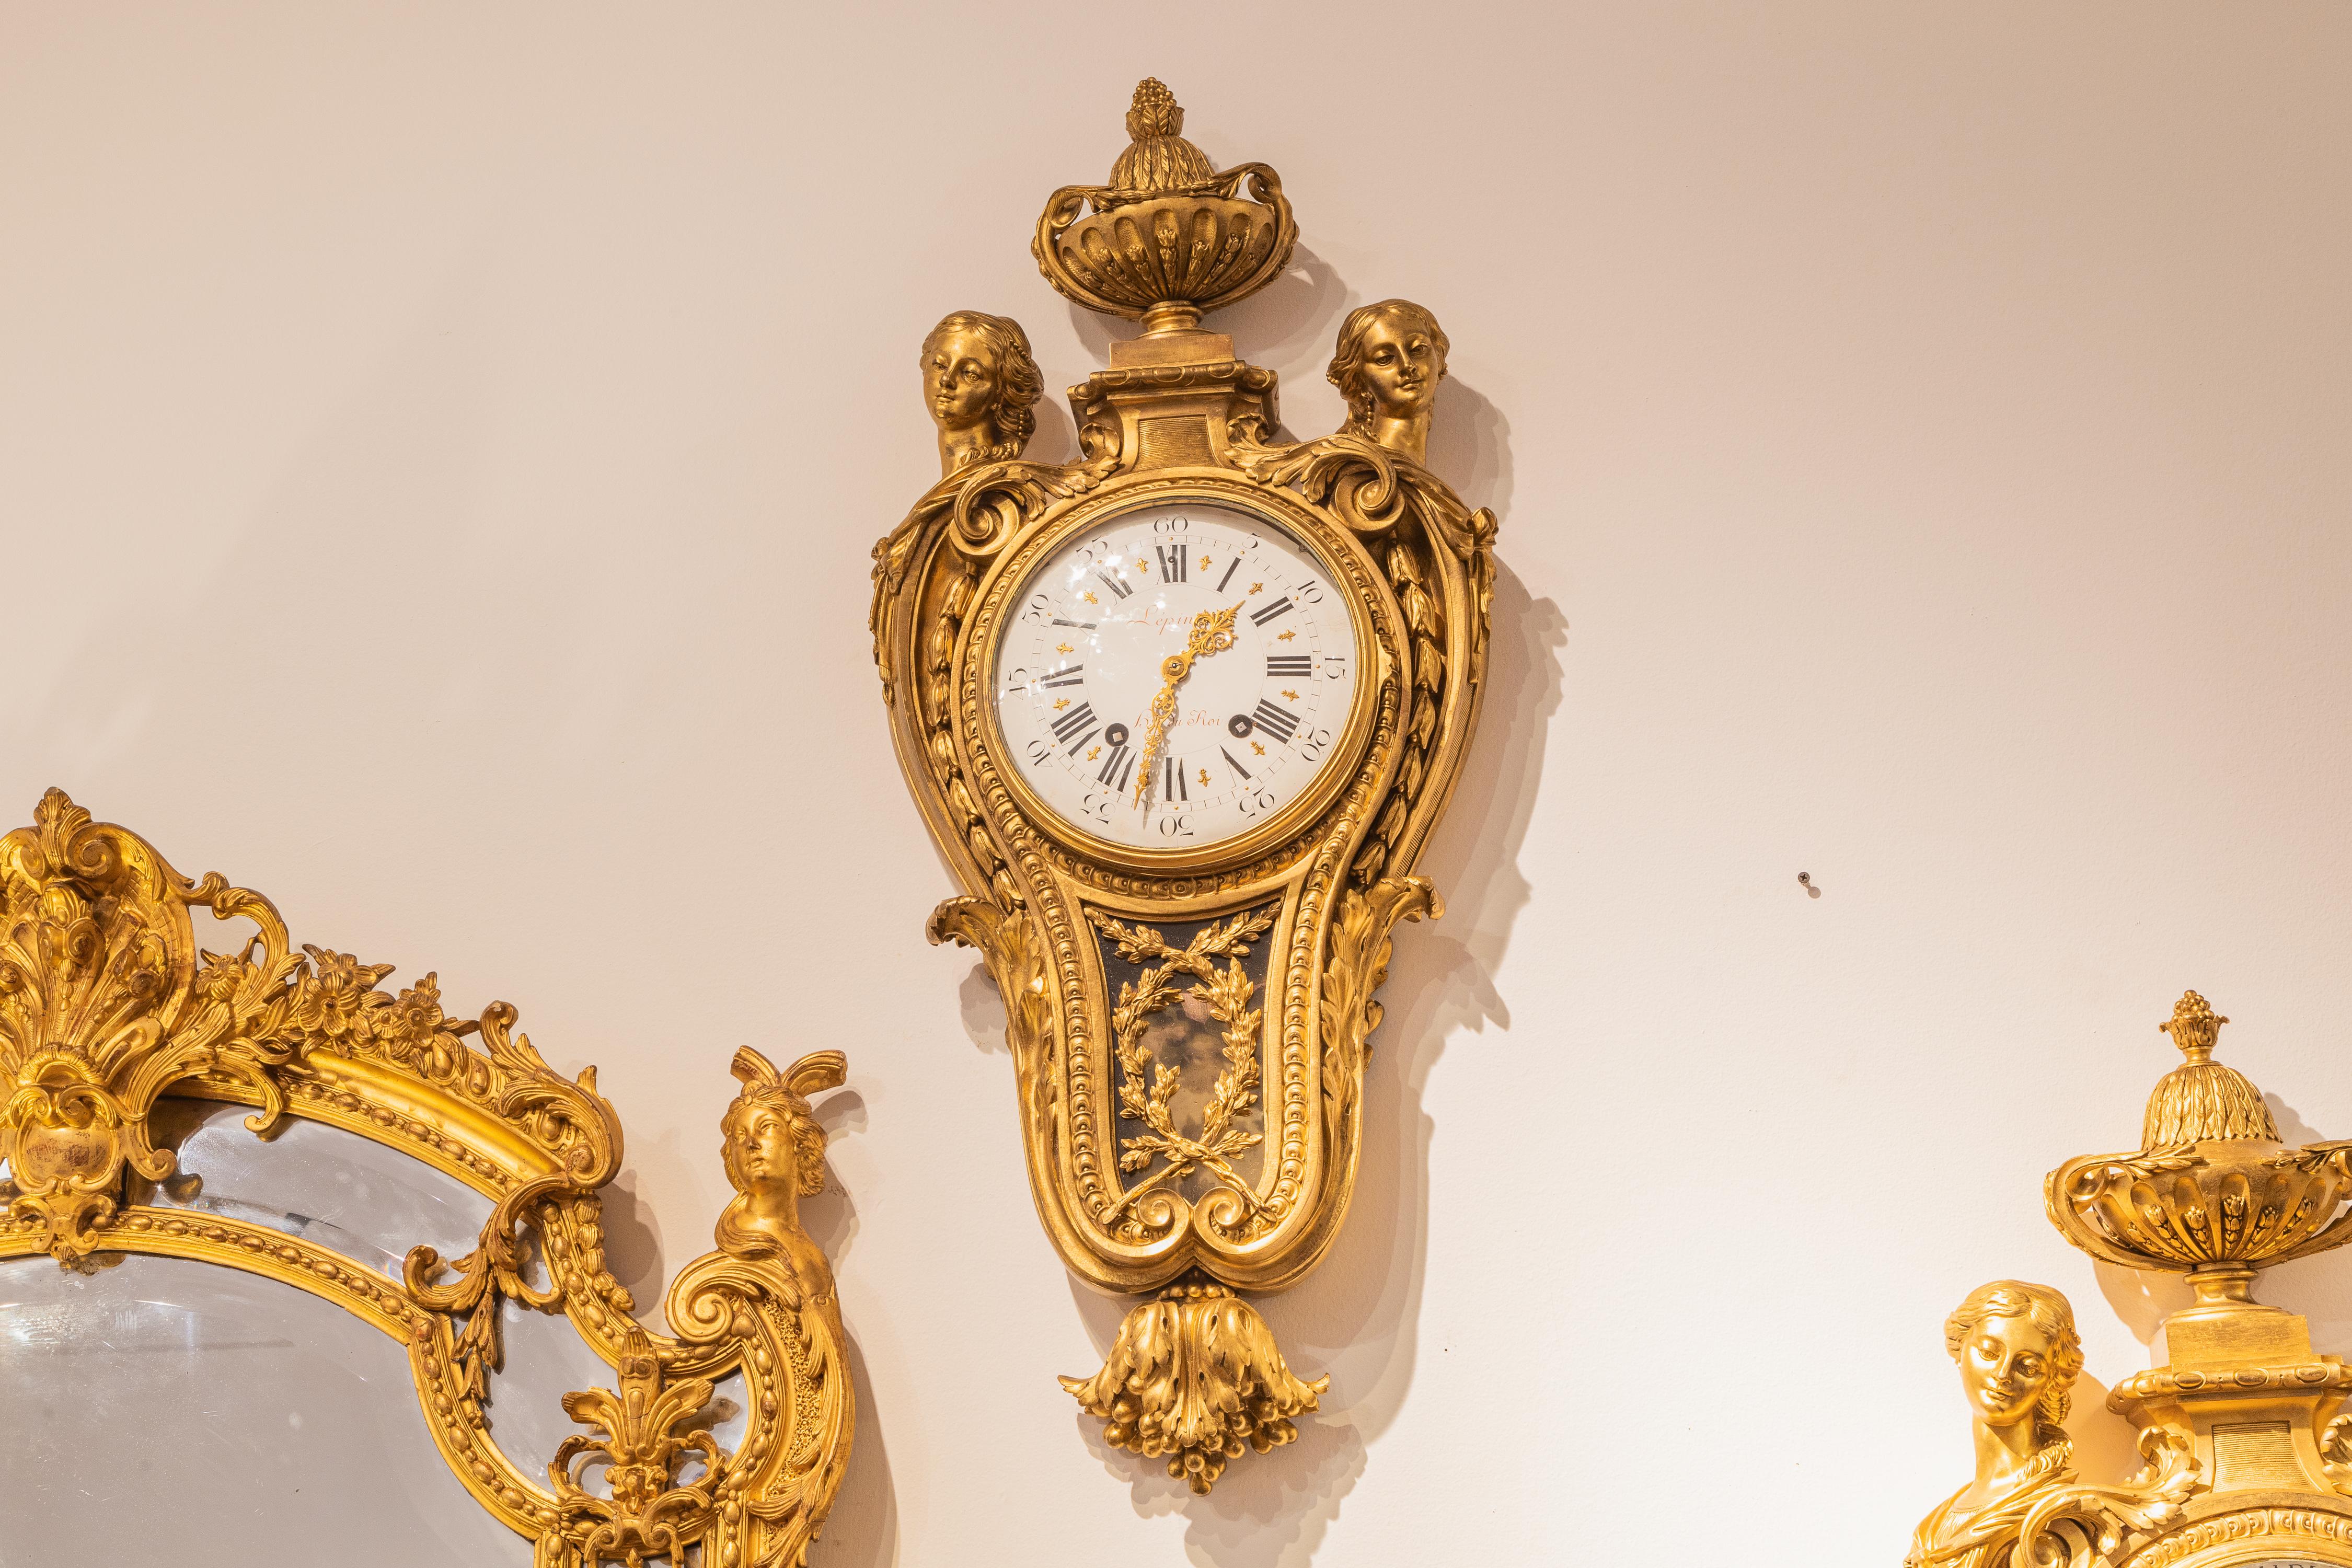 Une belle et rare paire d'horloges et de baromètres en bronze doré de Jean Antoine Lepine, datant de la fin du 18e siècle ou du début du 19e siècle. 

Rendez-vous avec le roi 
Jean Lepine s'installe à Paris en 1774, à l'âge de 24 ans. Il  était